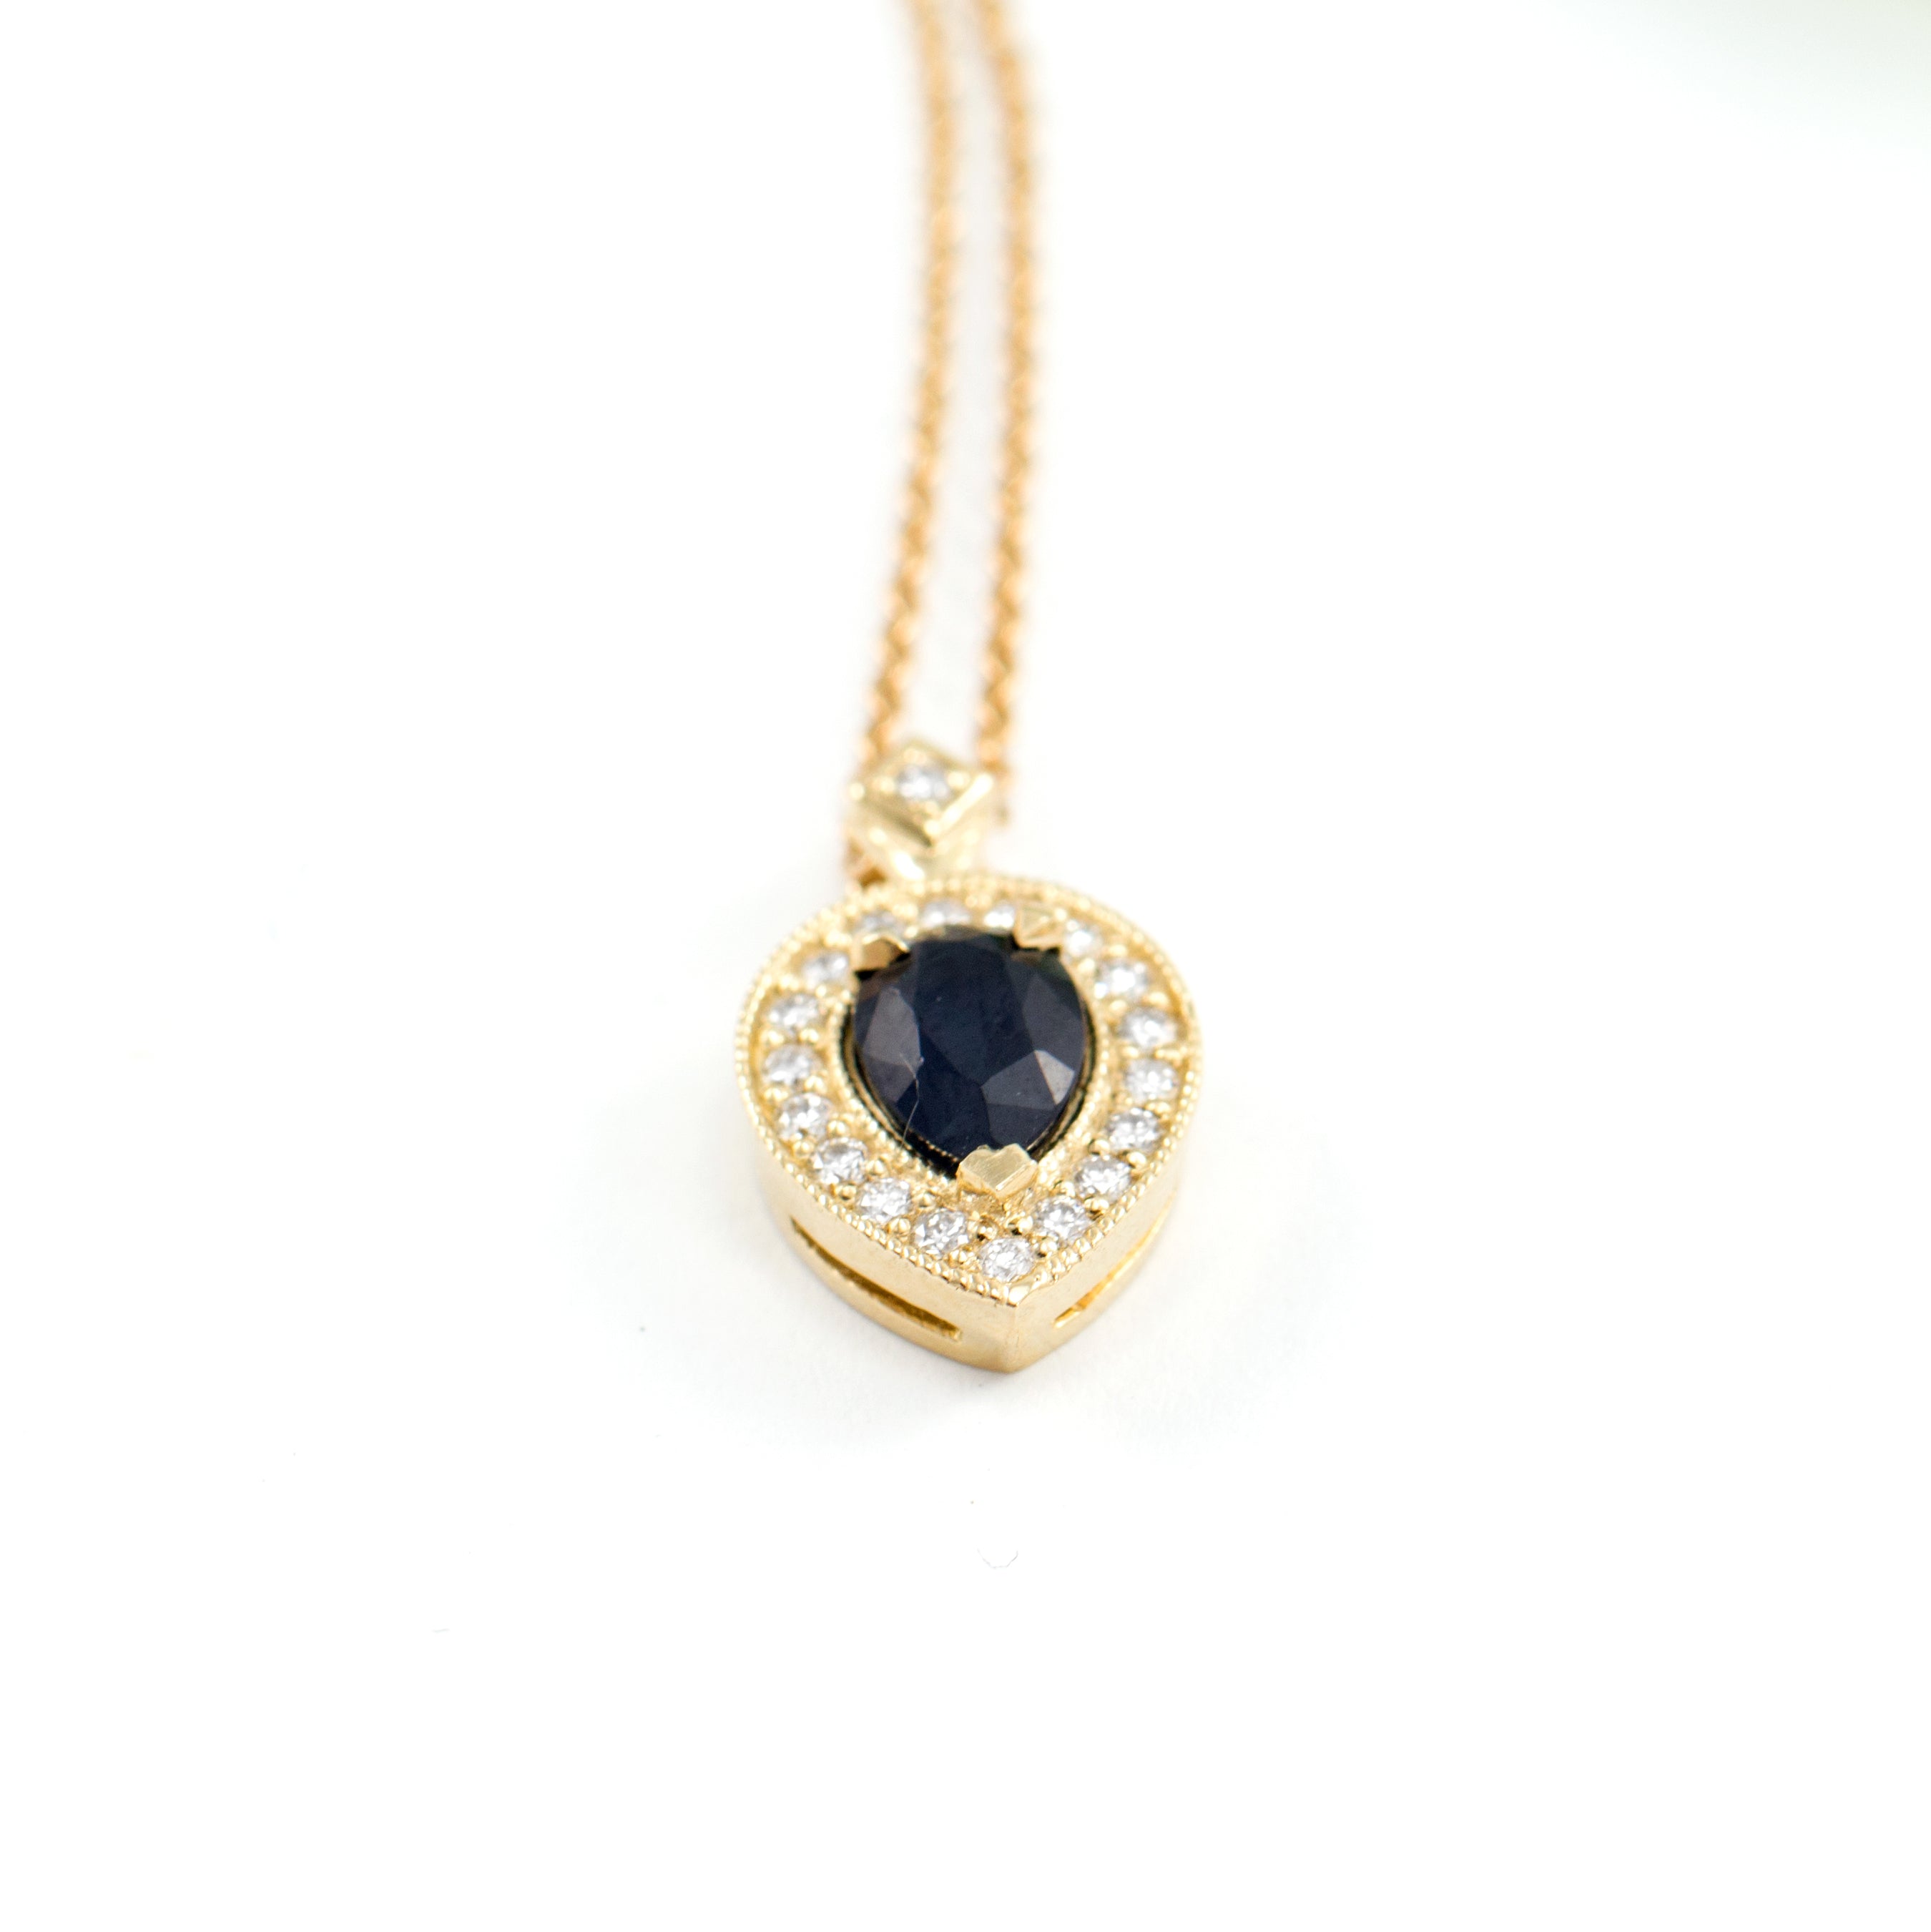 Luna Necklace with Black Diamond